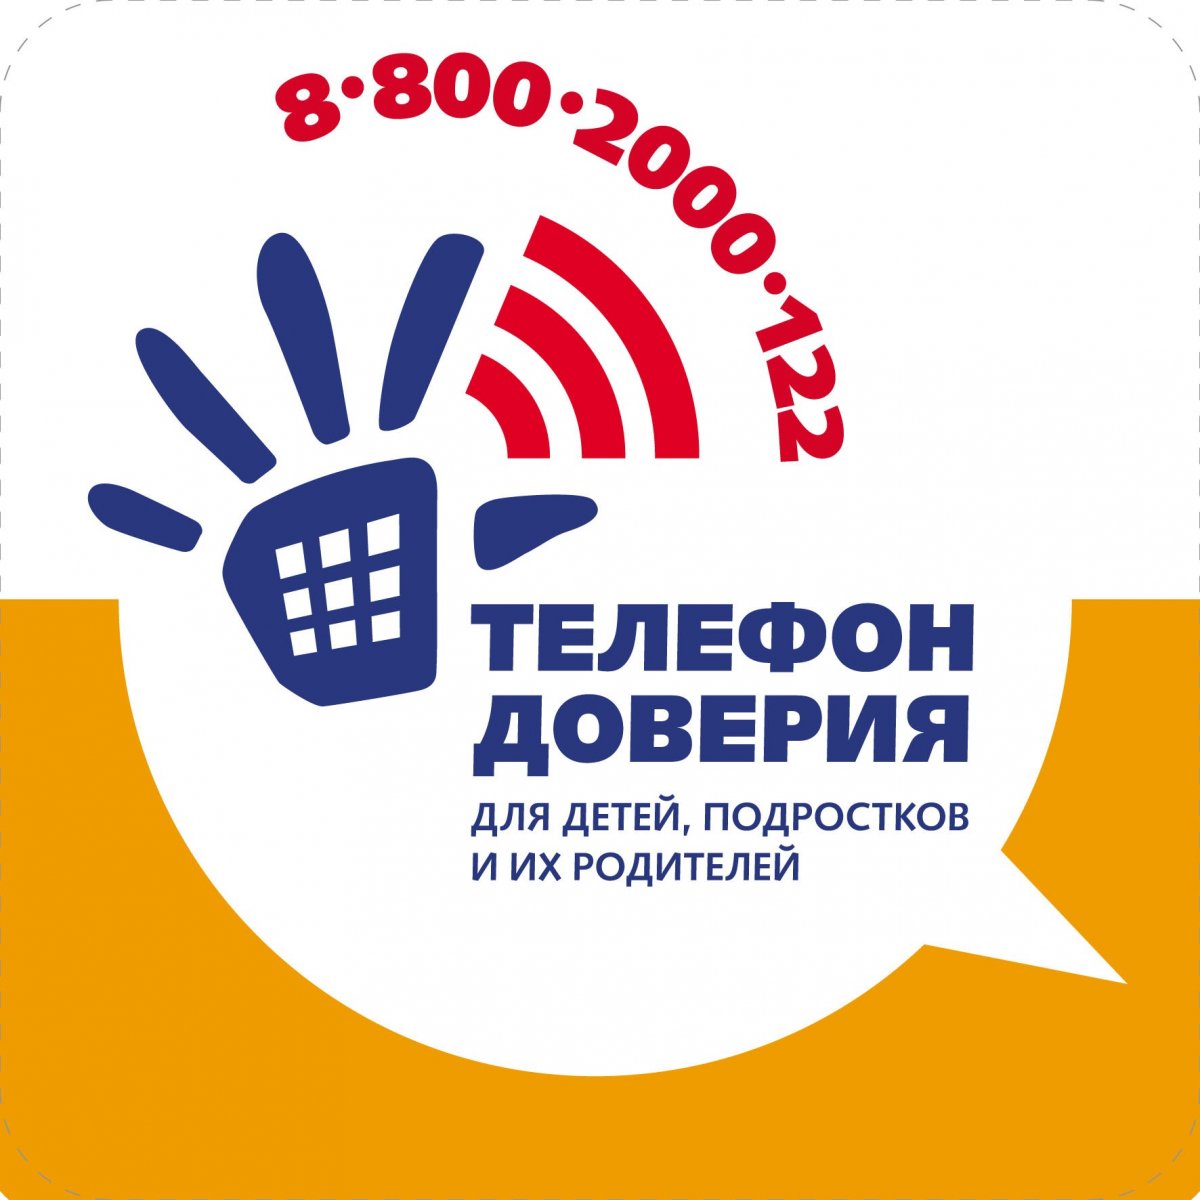 «Единый общероссийский телефон доверия для детей, подростков и родителей: 8-800-2000-122»